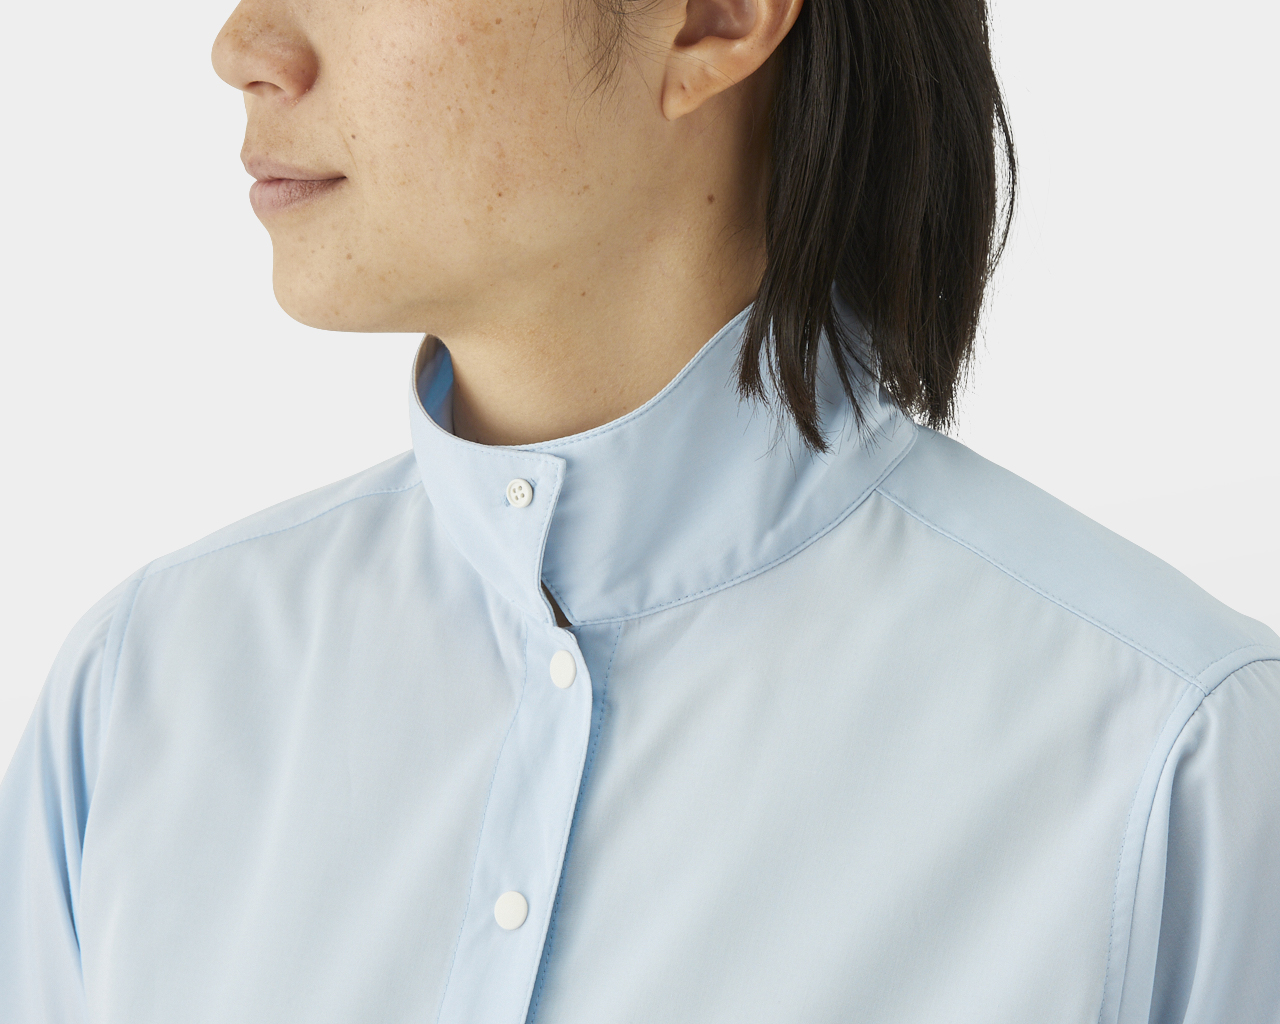 販売特注品 山と道 Bamboo Shirt バンブーシャツ モーニングブルー L 超安い価格:10340円  シャツ